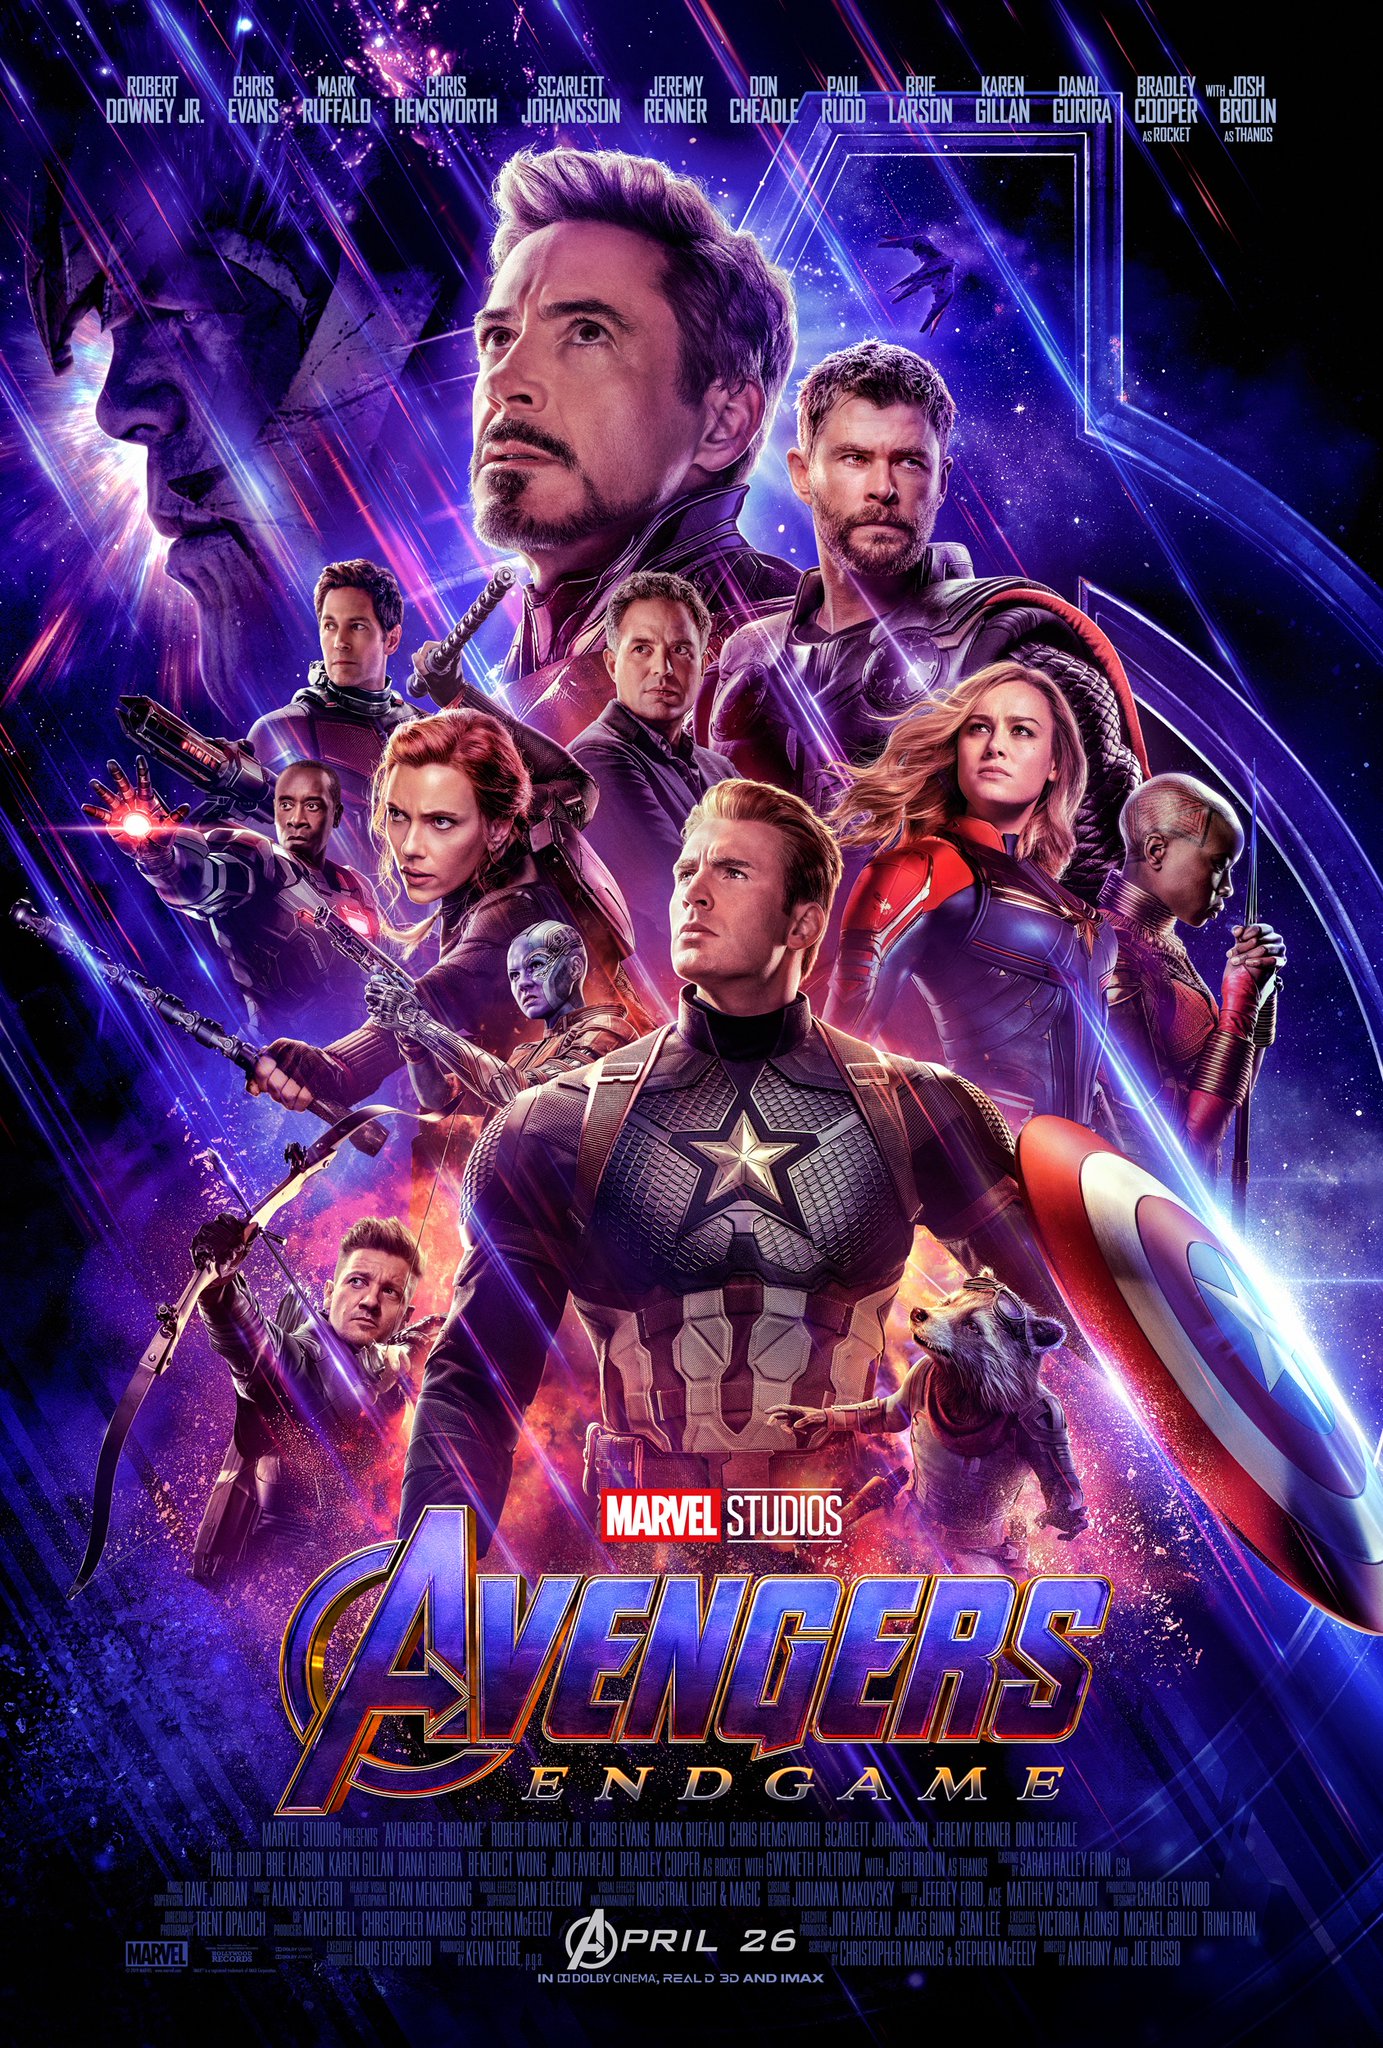 Marvel Studios presents "Avengers: Endgame"